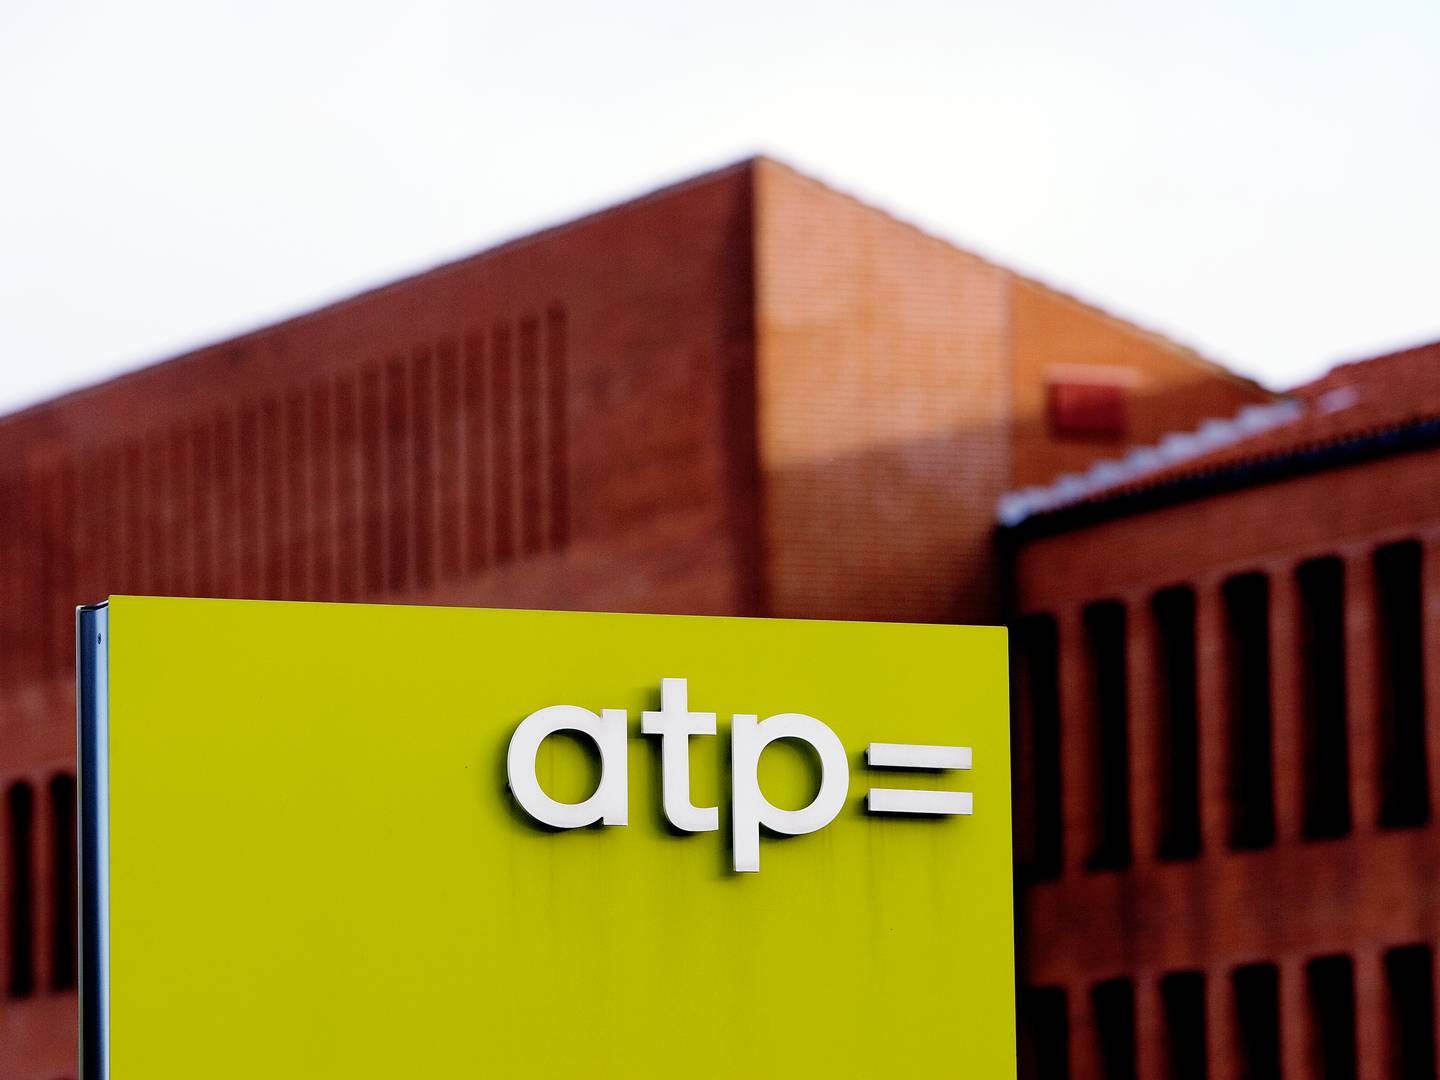 ATP har omkring 5,5 mio. medlemmer og udbetalte sidste år pensionsydelser for 17,3 mia. kr. | Foto: Thomas Borberg/Politiken/Ritzau Scanpix